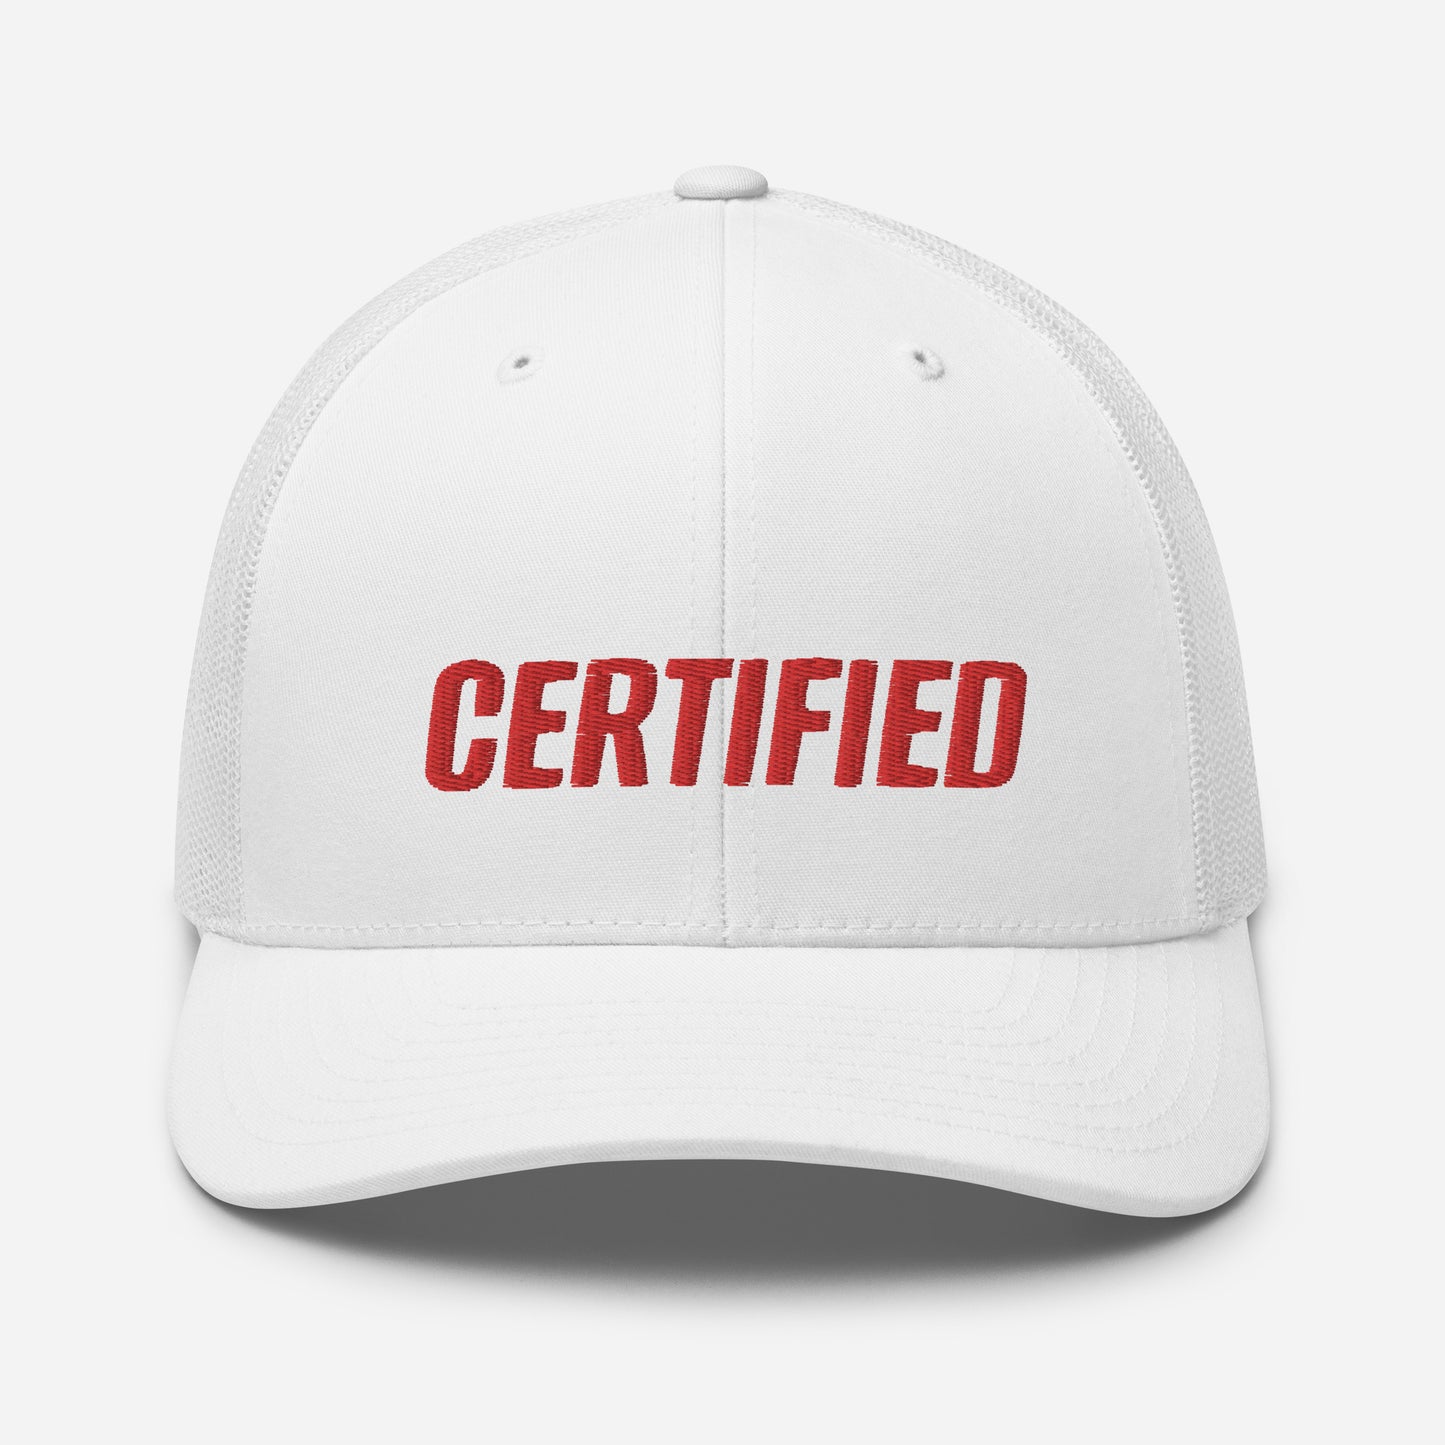 Certified Trucker Cap